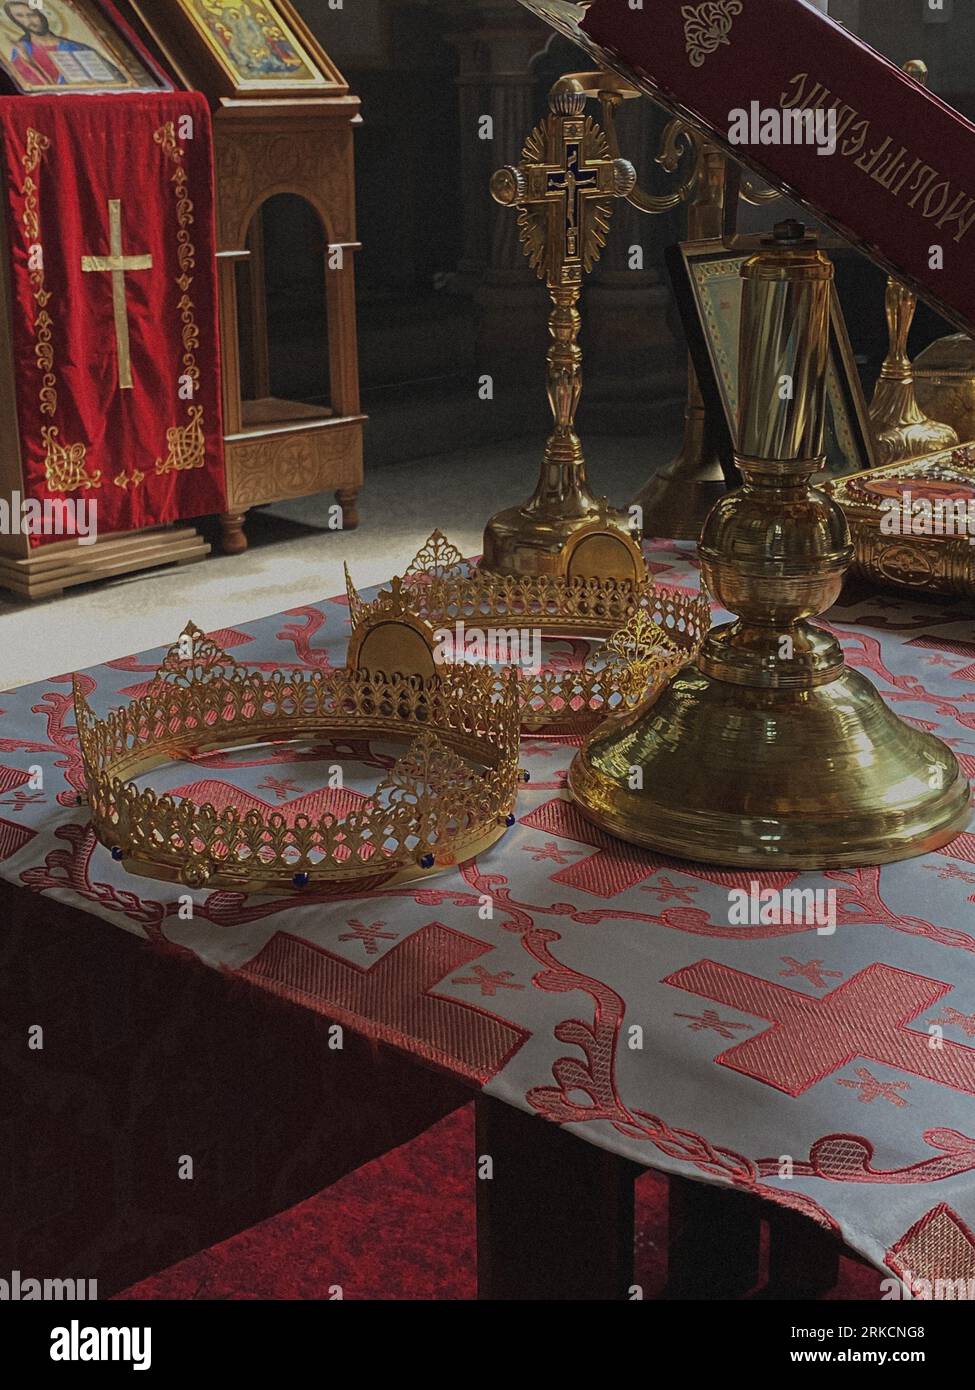 Un tavolo dorato ornato con oggetti decorativi si erge in modo prominente di fronte a un altare in un ambiente ritualistico Foto Stock